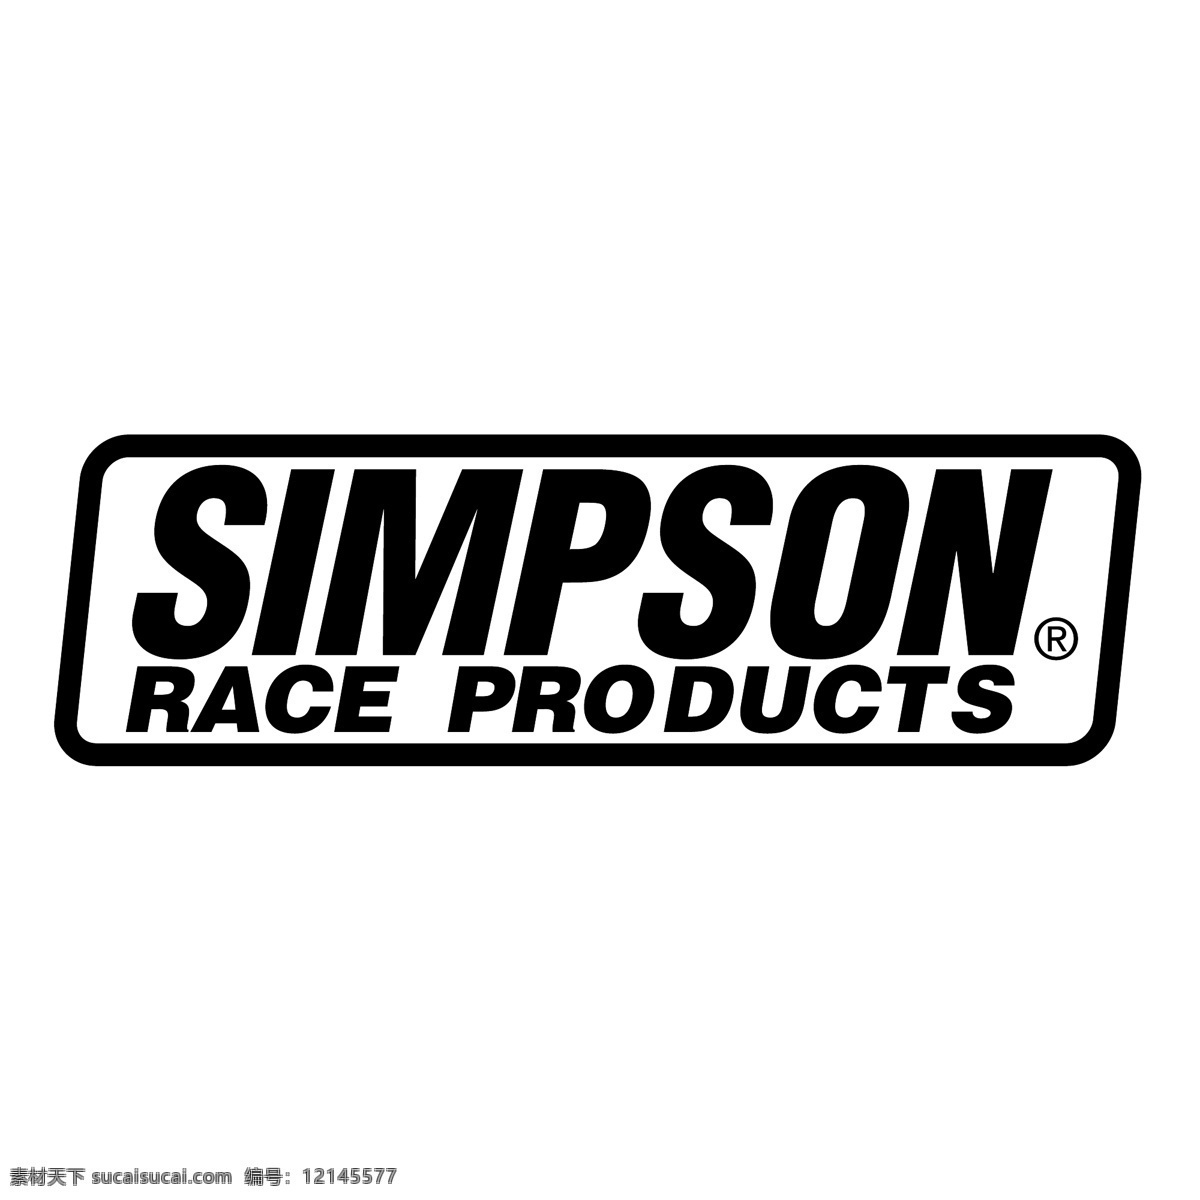 辛普森 竞争 产品 矢量标志下载 免费矢量标识 商标 品牌标识 标识 矢量 免费 品牌 公司 白色